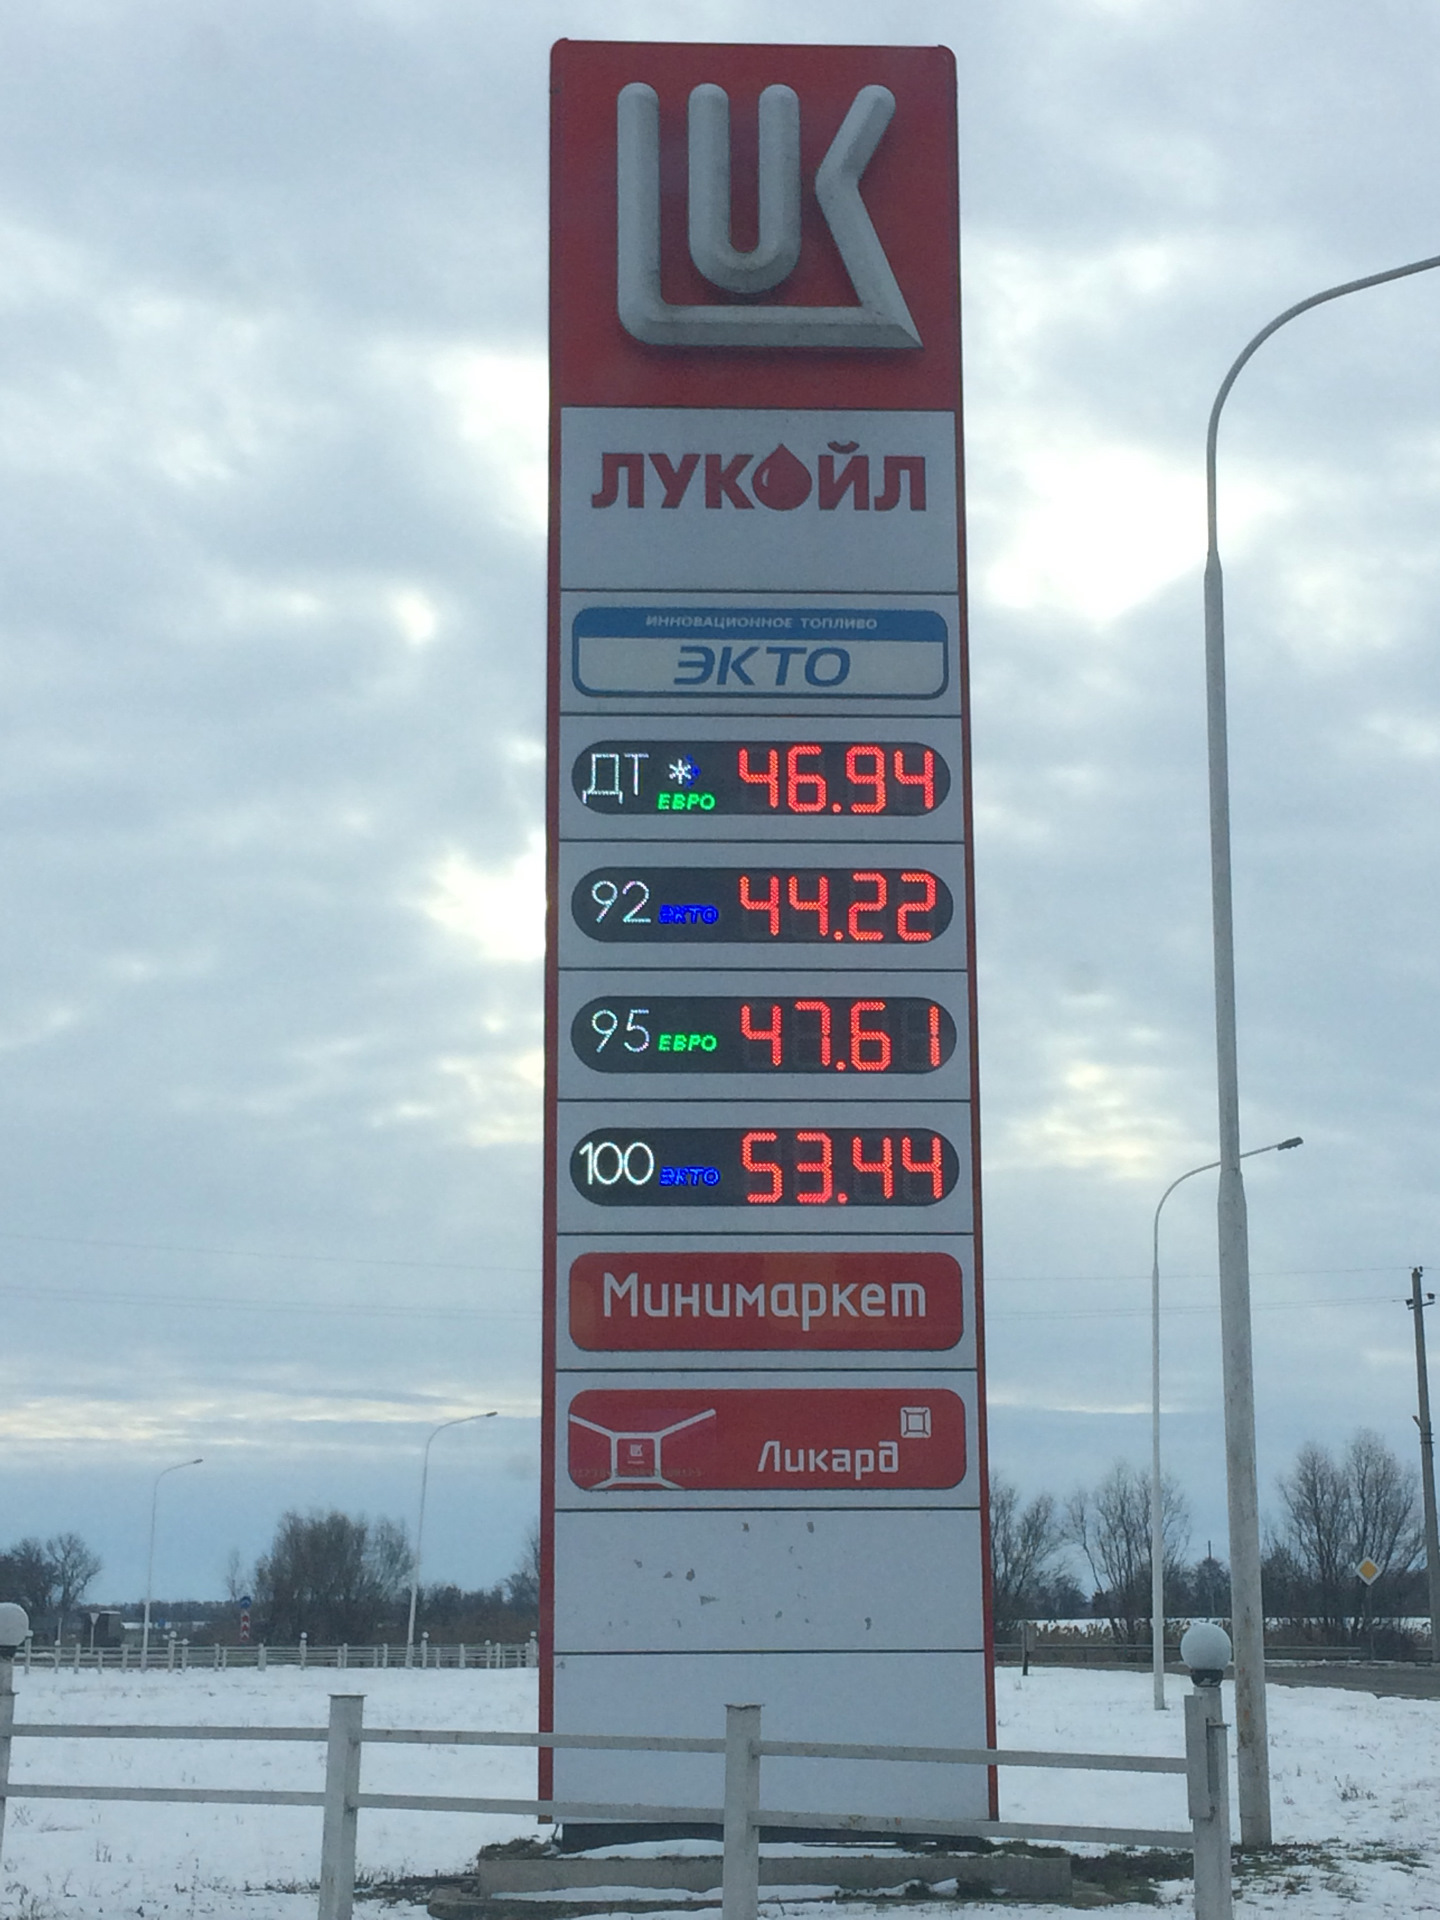 Цена солярки на сегодня. Стоимость бензина в Краснодаре. Литр 92 бензина в Краснодарском крае. Почем бензин в Краснодарском крае. Почём бензин 95 в Краснодарском крае.